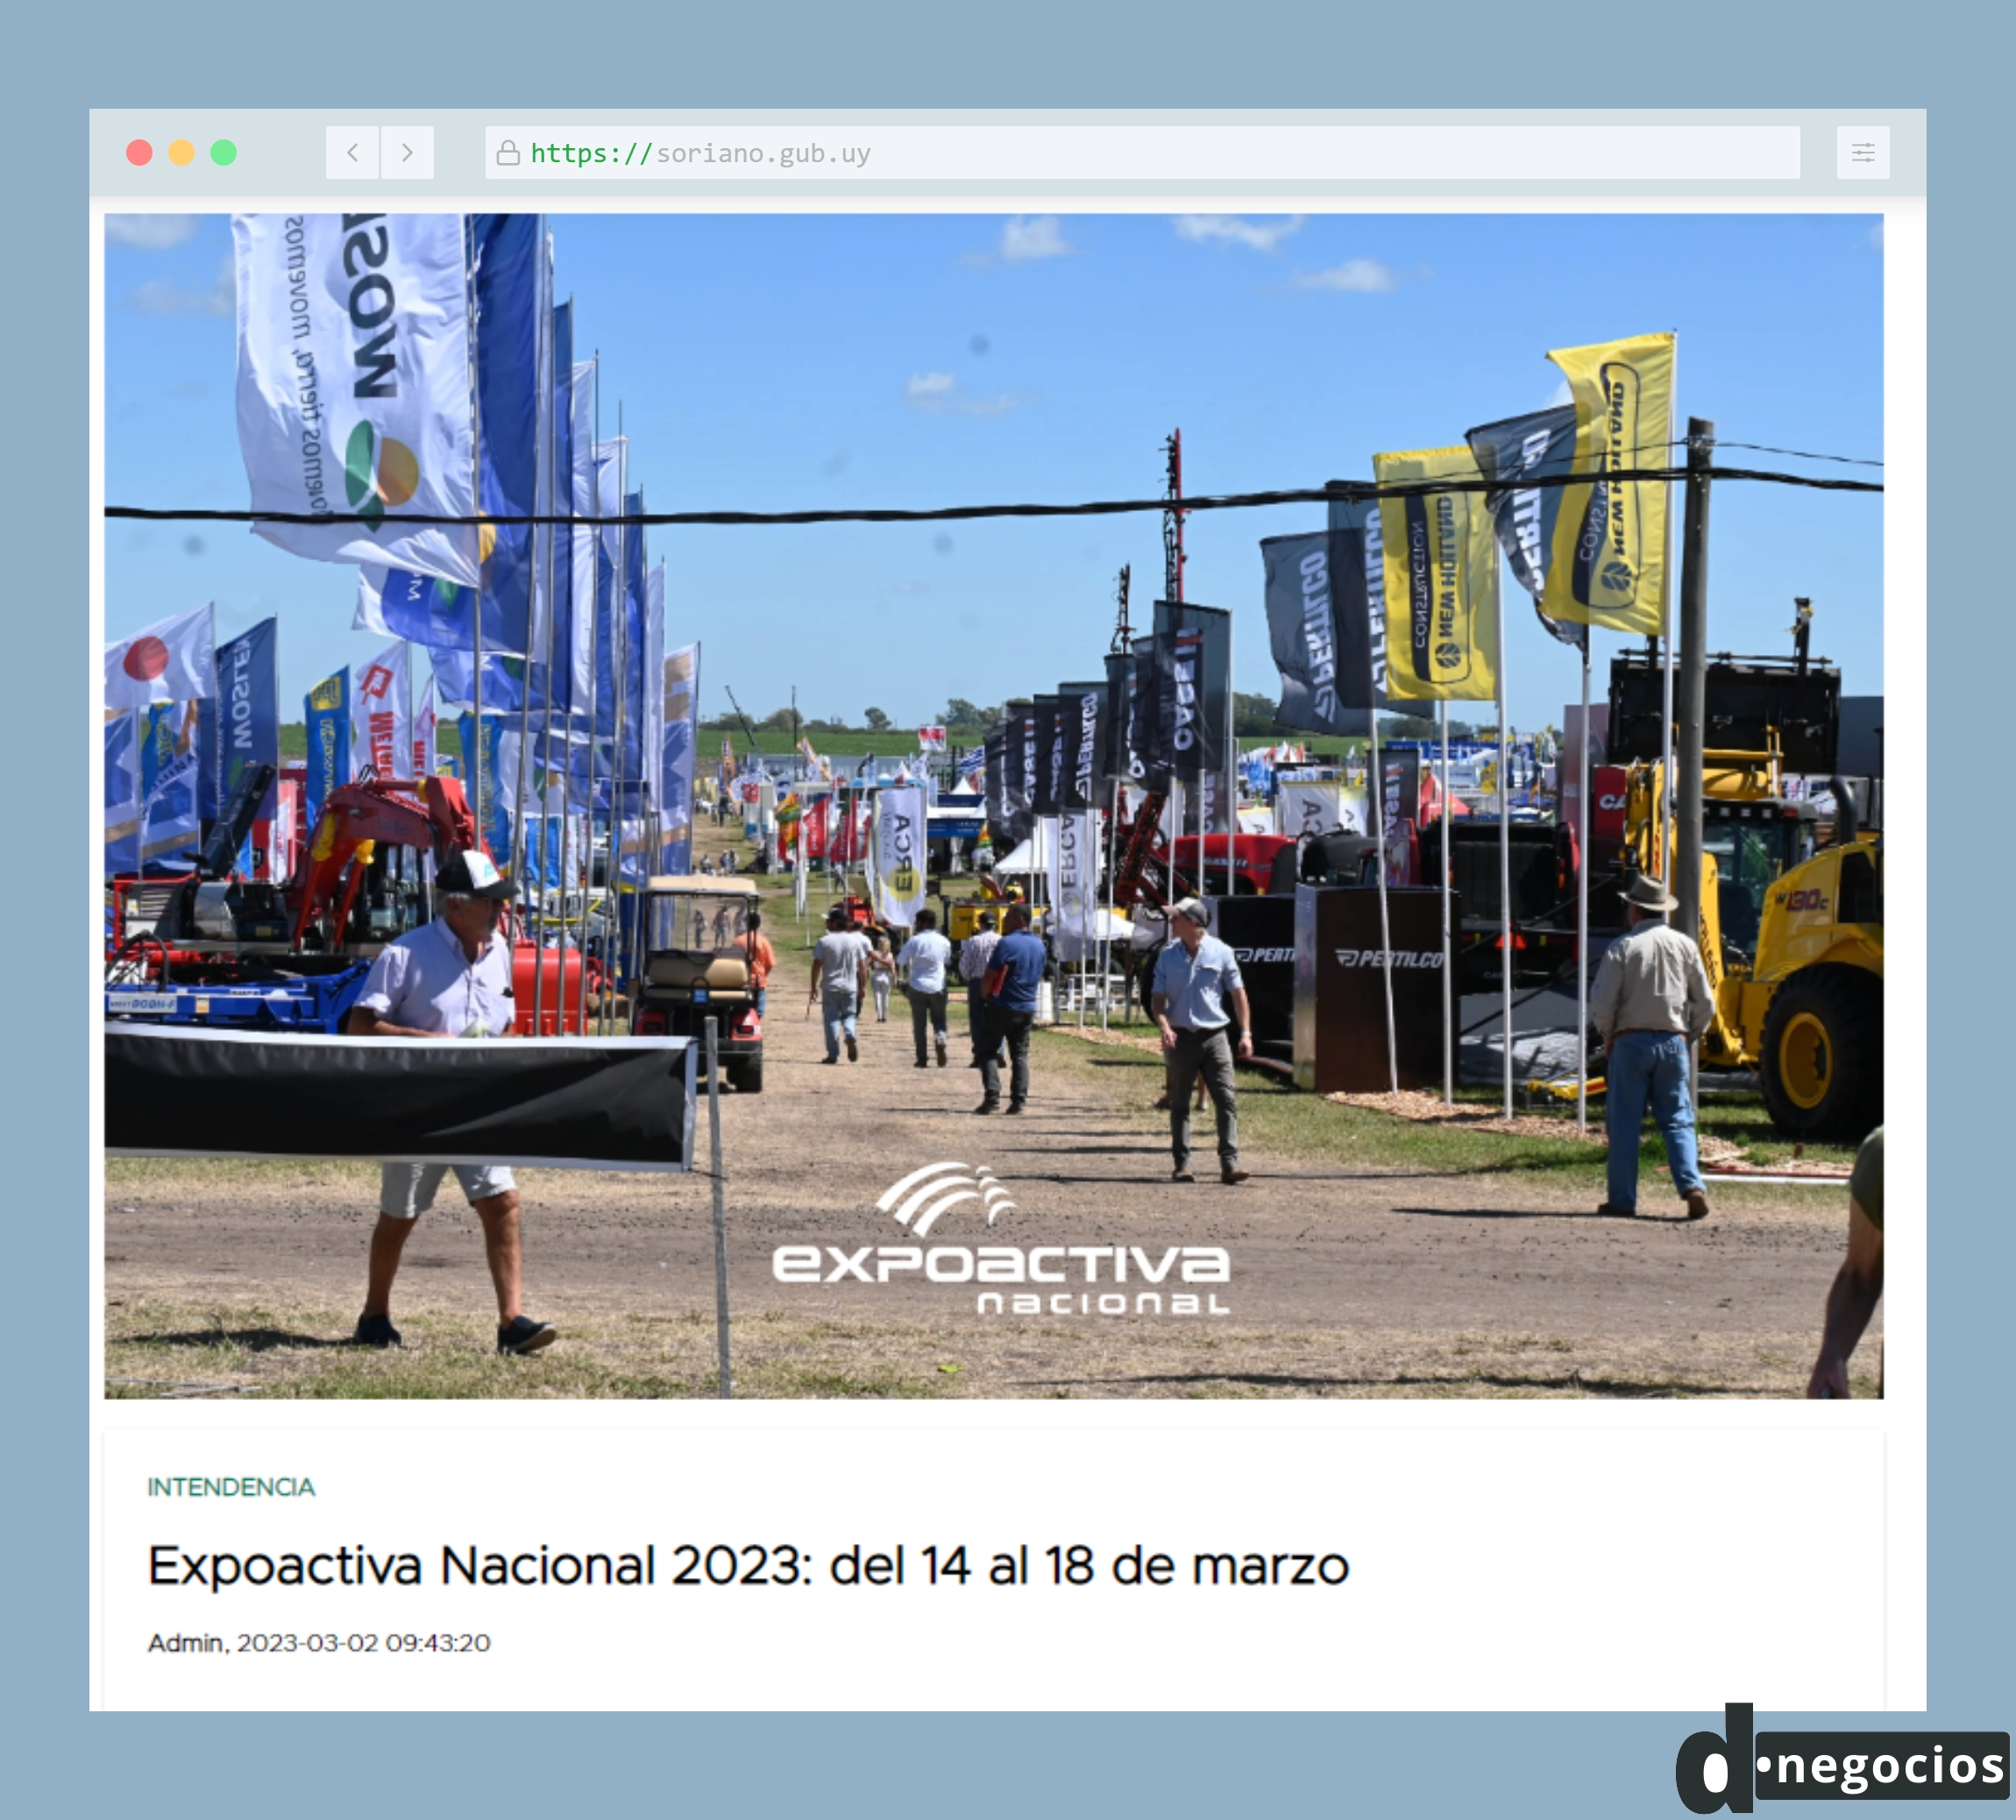 Comunicado de la Intendencia de Soriano sobre la edición 2023 de la Expoactiva.